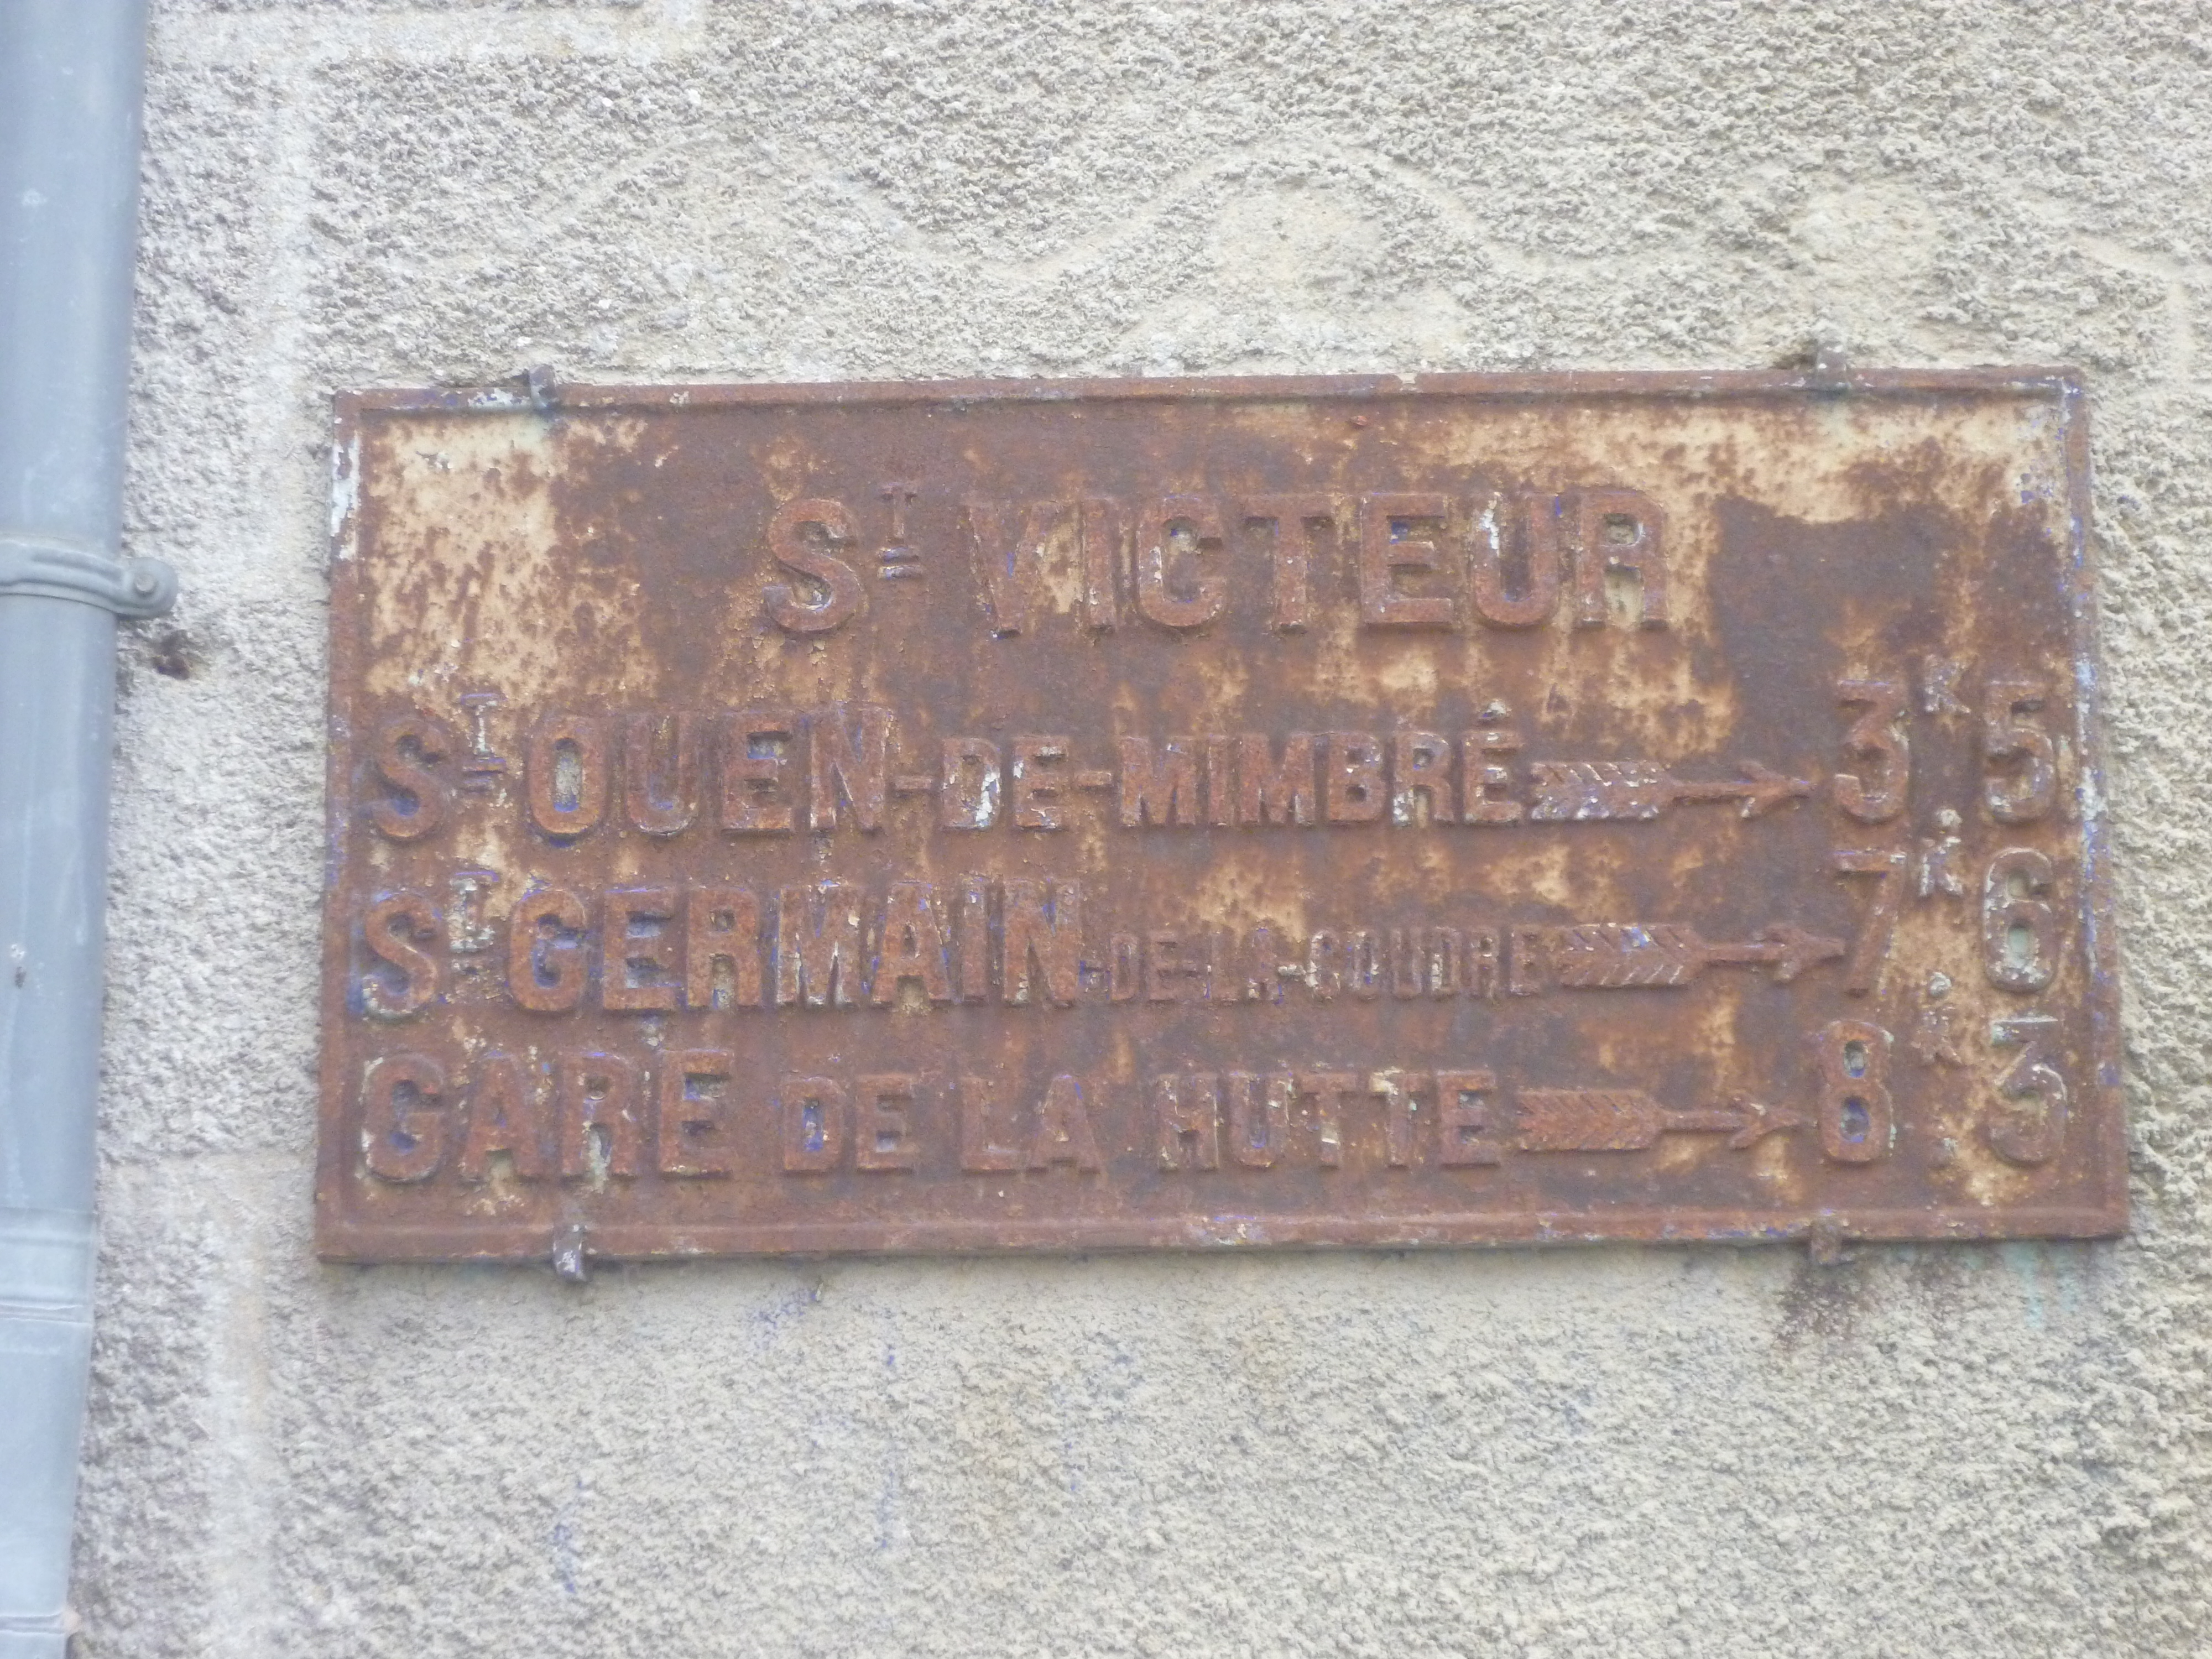 Saint Victeur - Plaque de cocher - Saint Ouen de Mimbré - Saint Germain de la Coudre - Gare de La Hutte (Gwéna Tireau)